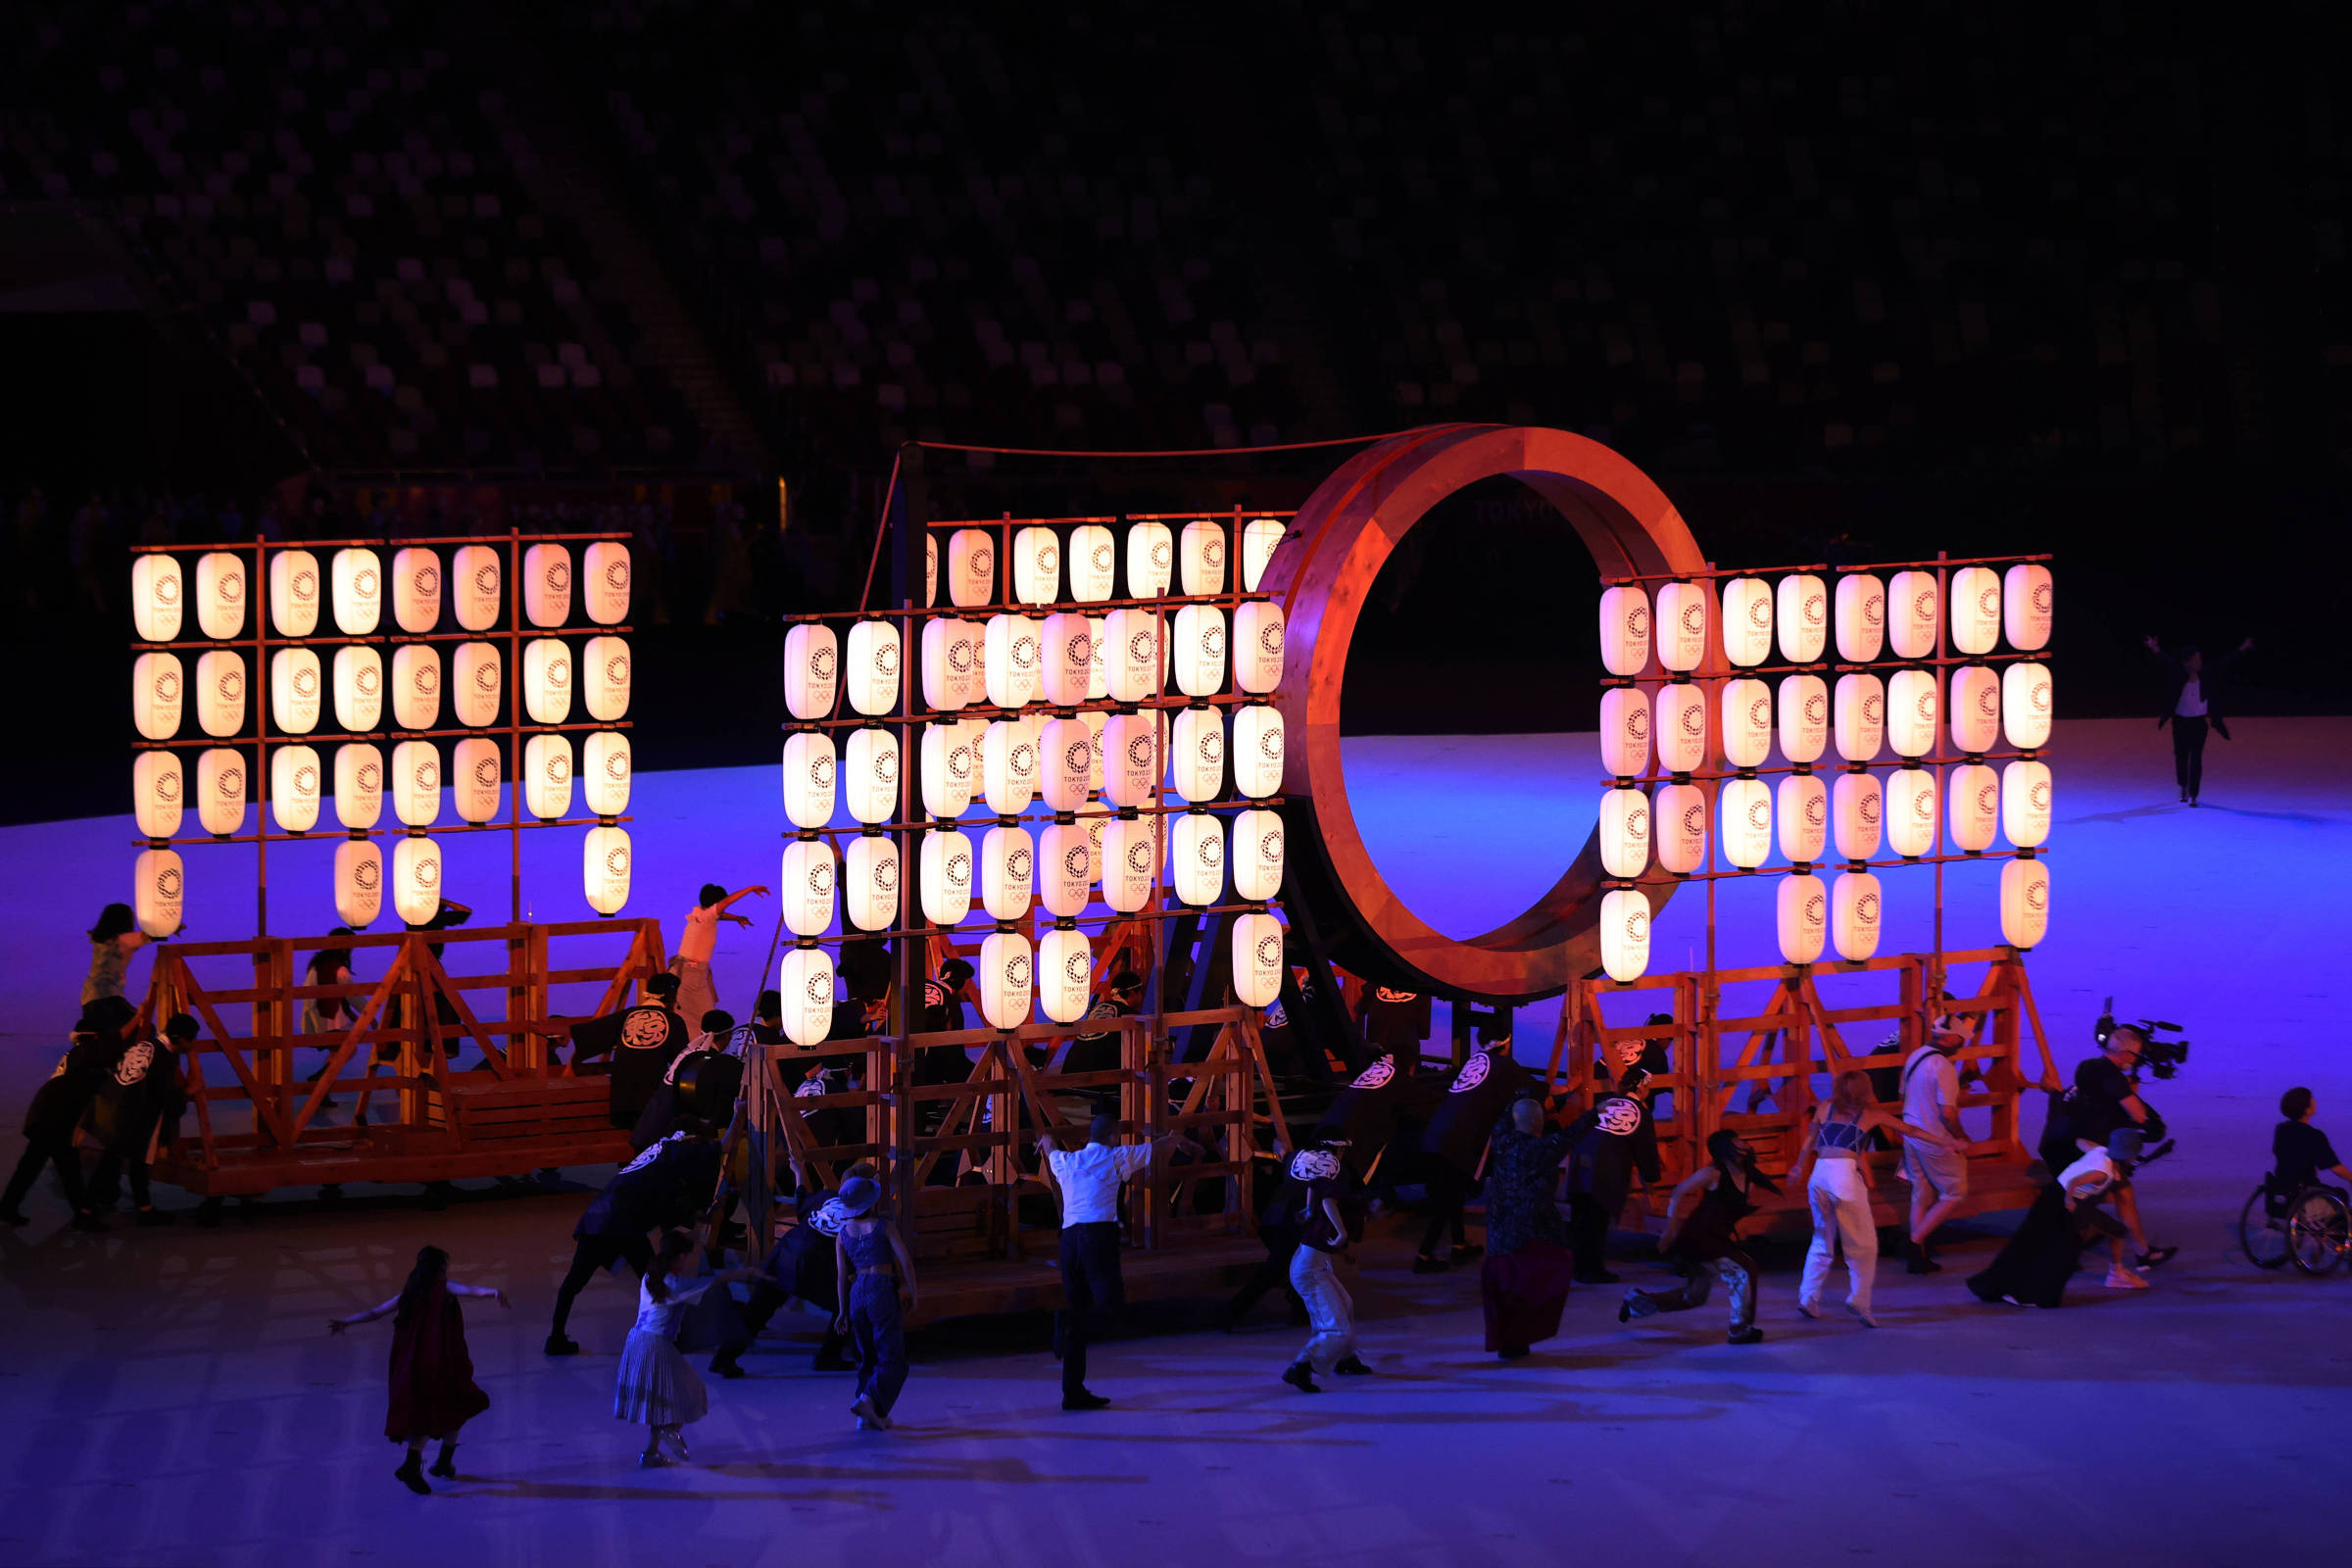 Os momentos mais pop das cerimônias de abertura da Olimpíada, Esportes